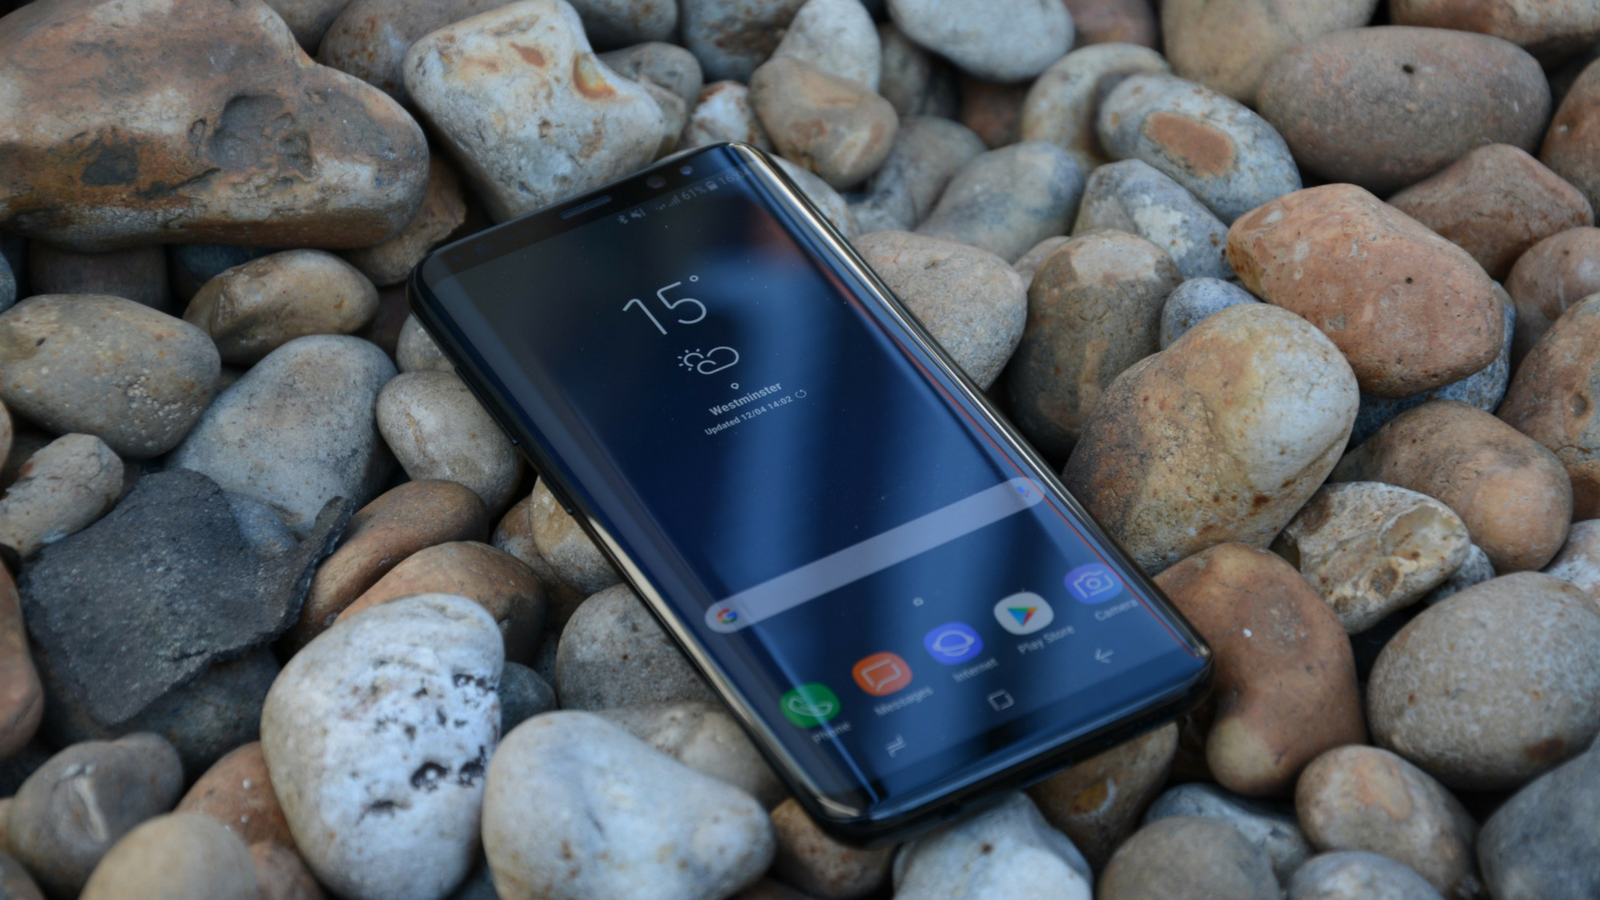 Pemberitahuan kesepakatan: Samsung Galaxy S8 akan murah